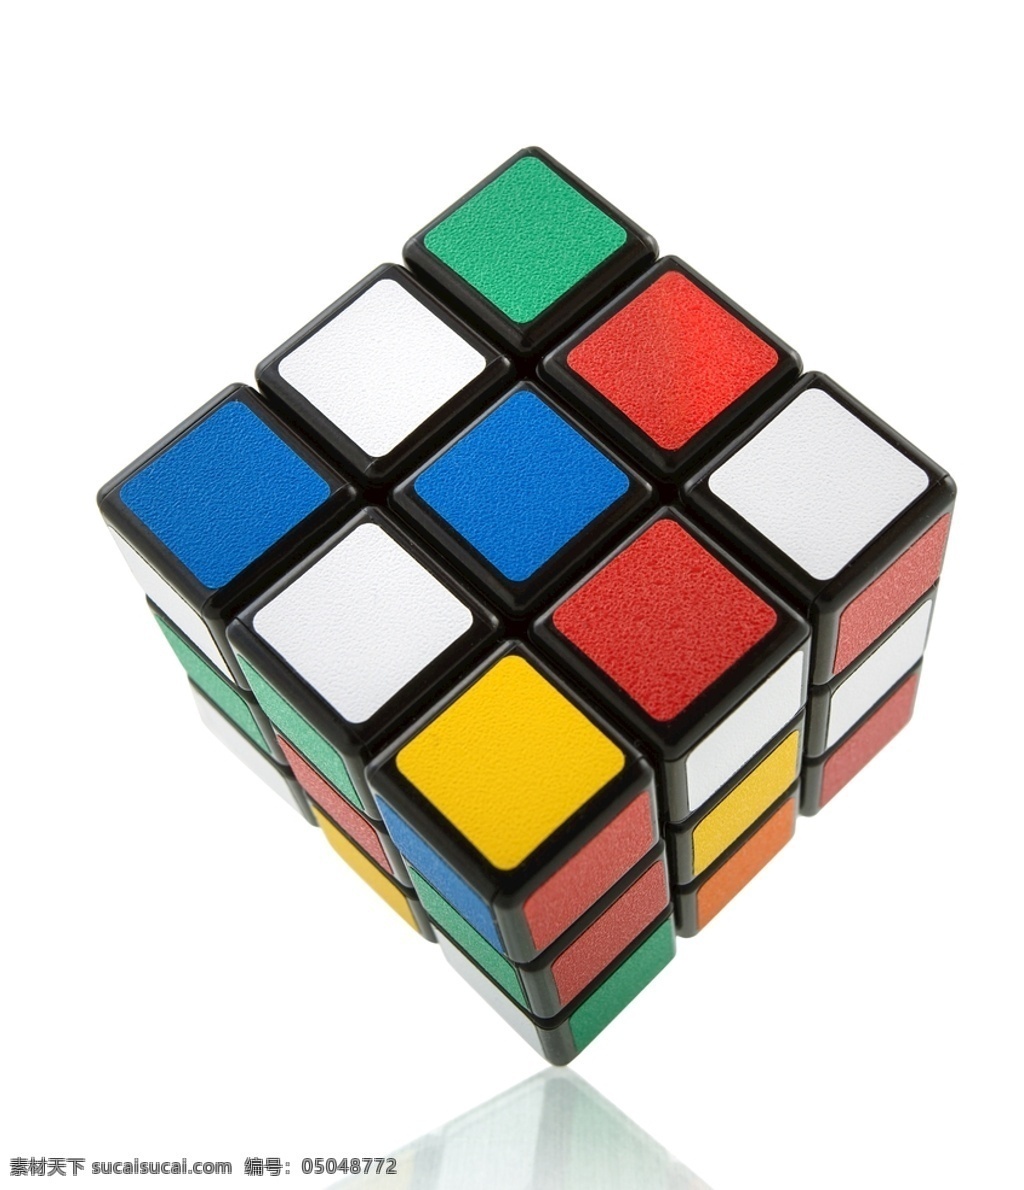 三阶魔方 方块 魔方玩具 魔方方块 标准魔方 色块 彩色魔方 彩色方块 色彩 颜色 3d 立体 智力玩具 生活百科 生活素材